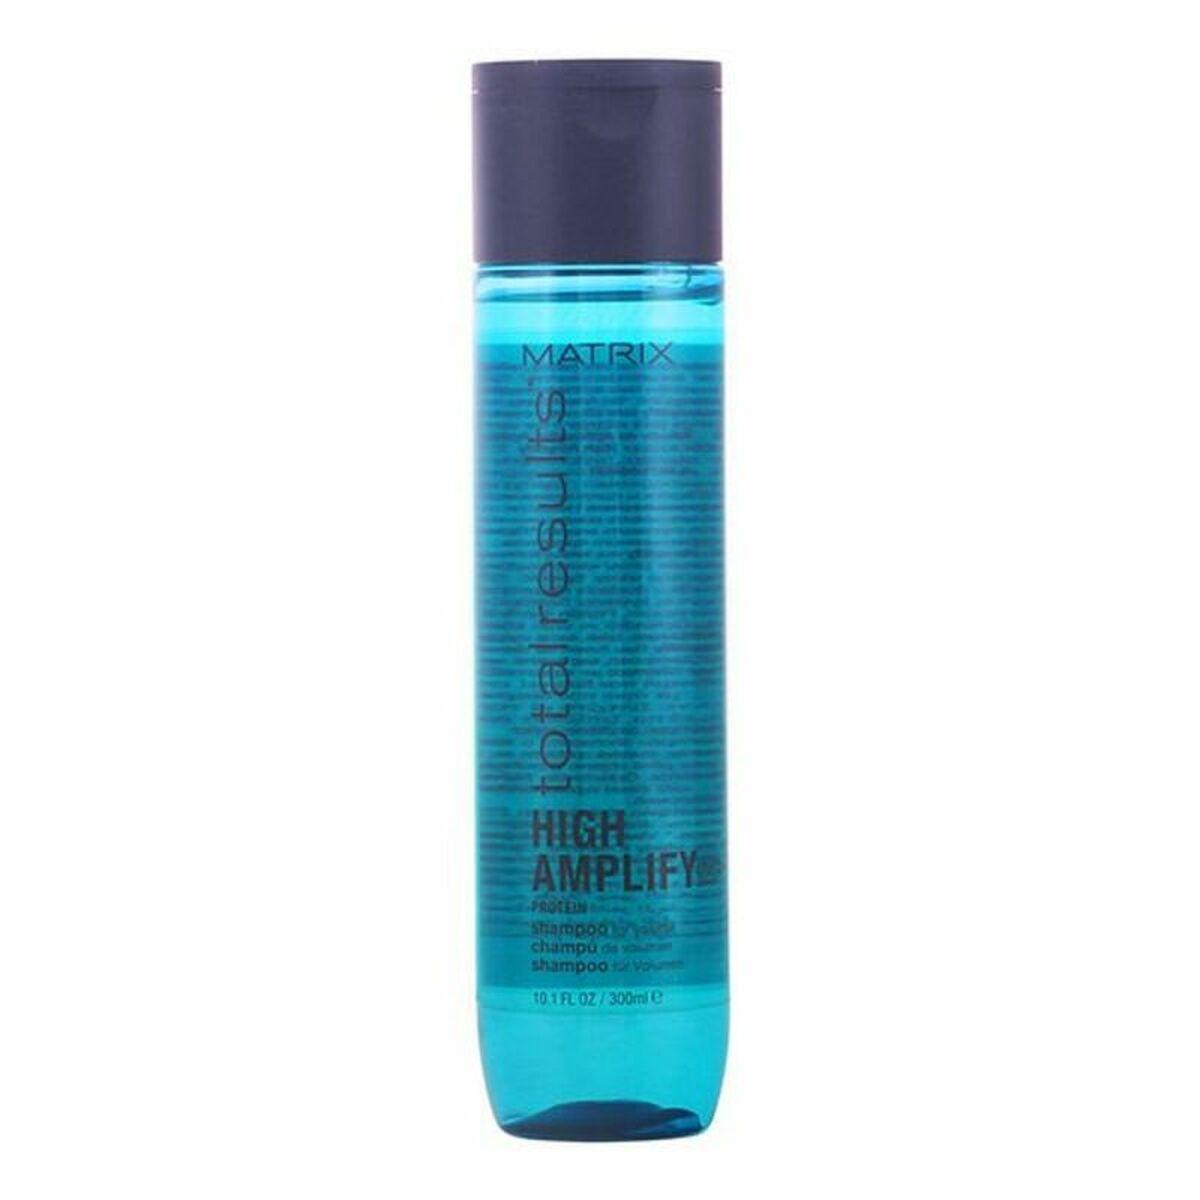 Billede af Daglig brug shampoo Total Results Amplify Matrix (300 ml)